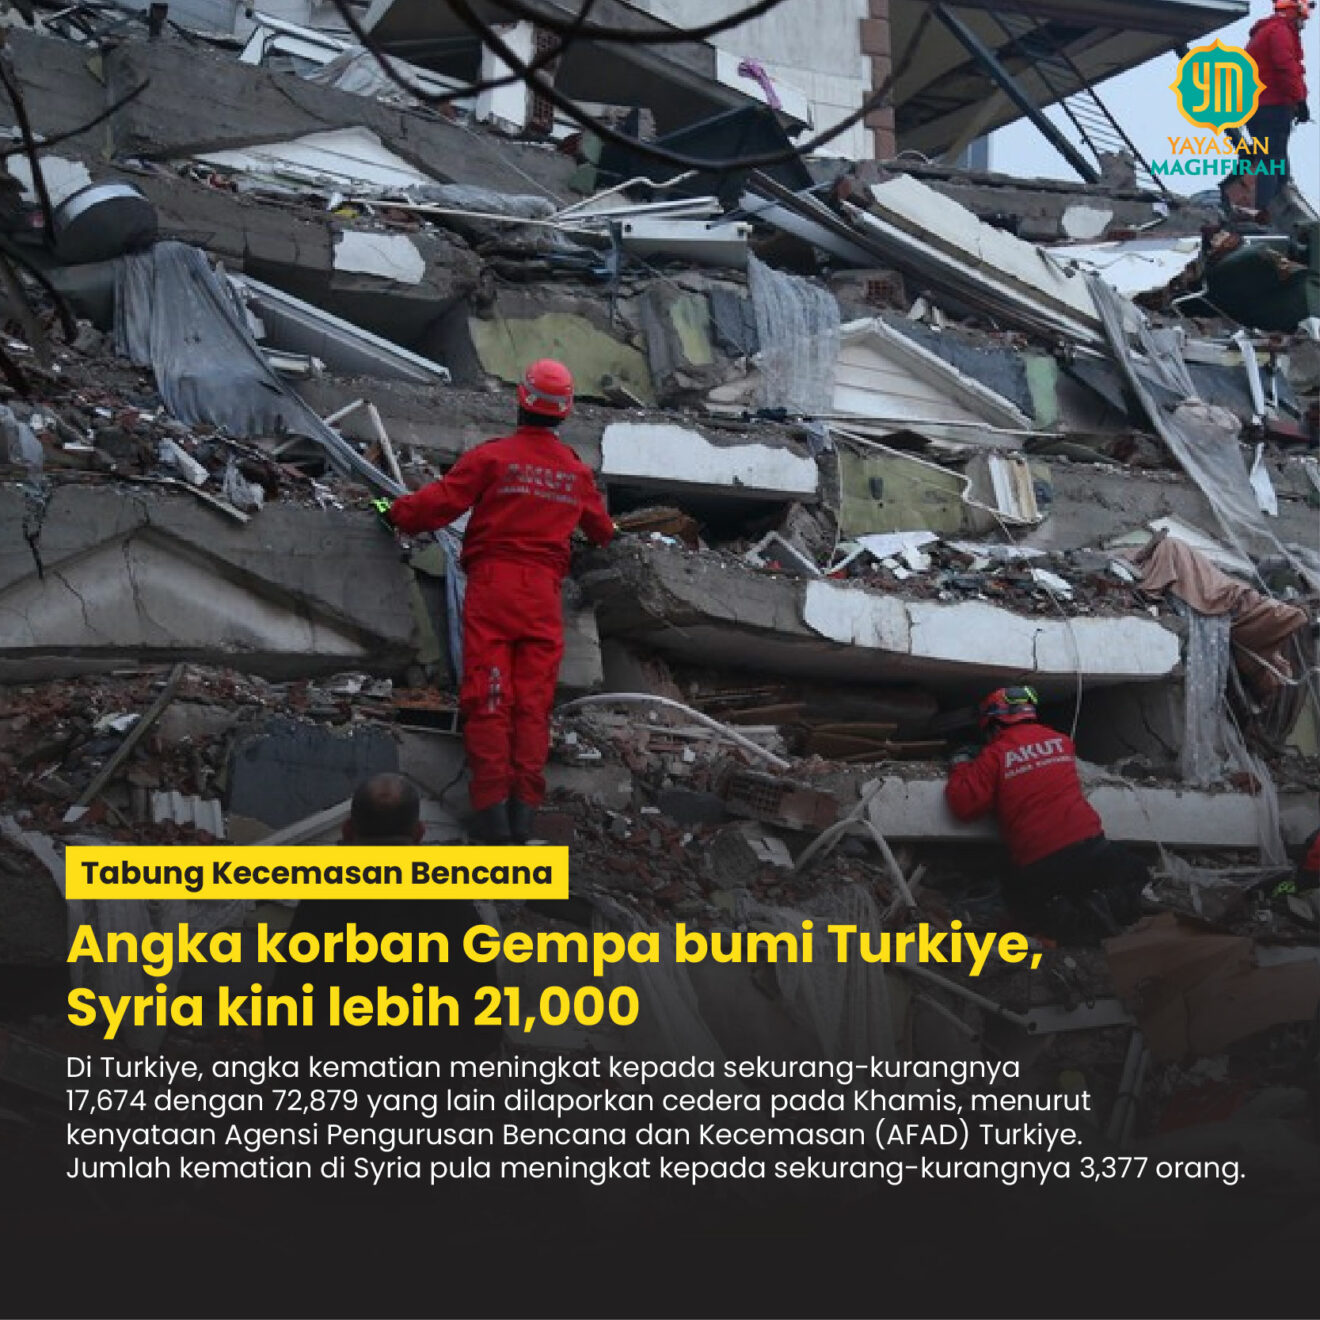 Angka Korban Gempa Bumi Turkiye Syria Kini Lebih 21000 Yayasan Maghfirah